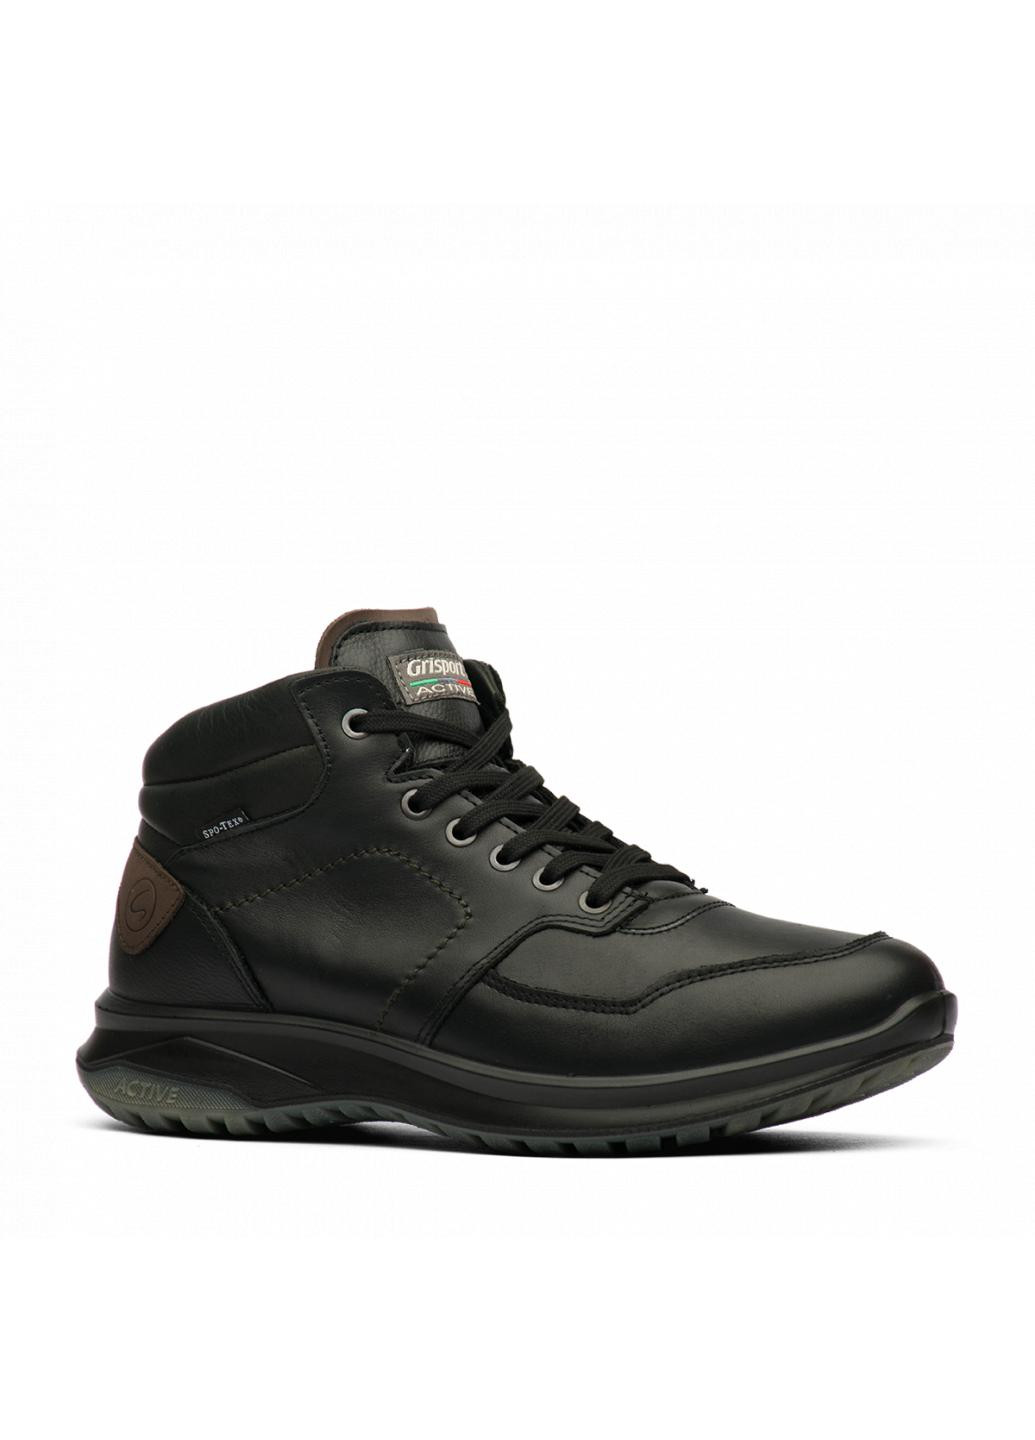 Черные зимние ботинки 44113-a8 Grisport